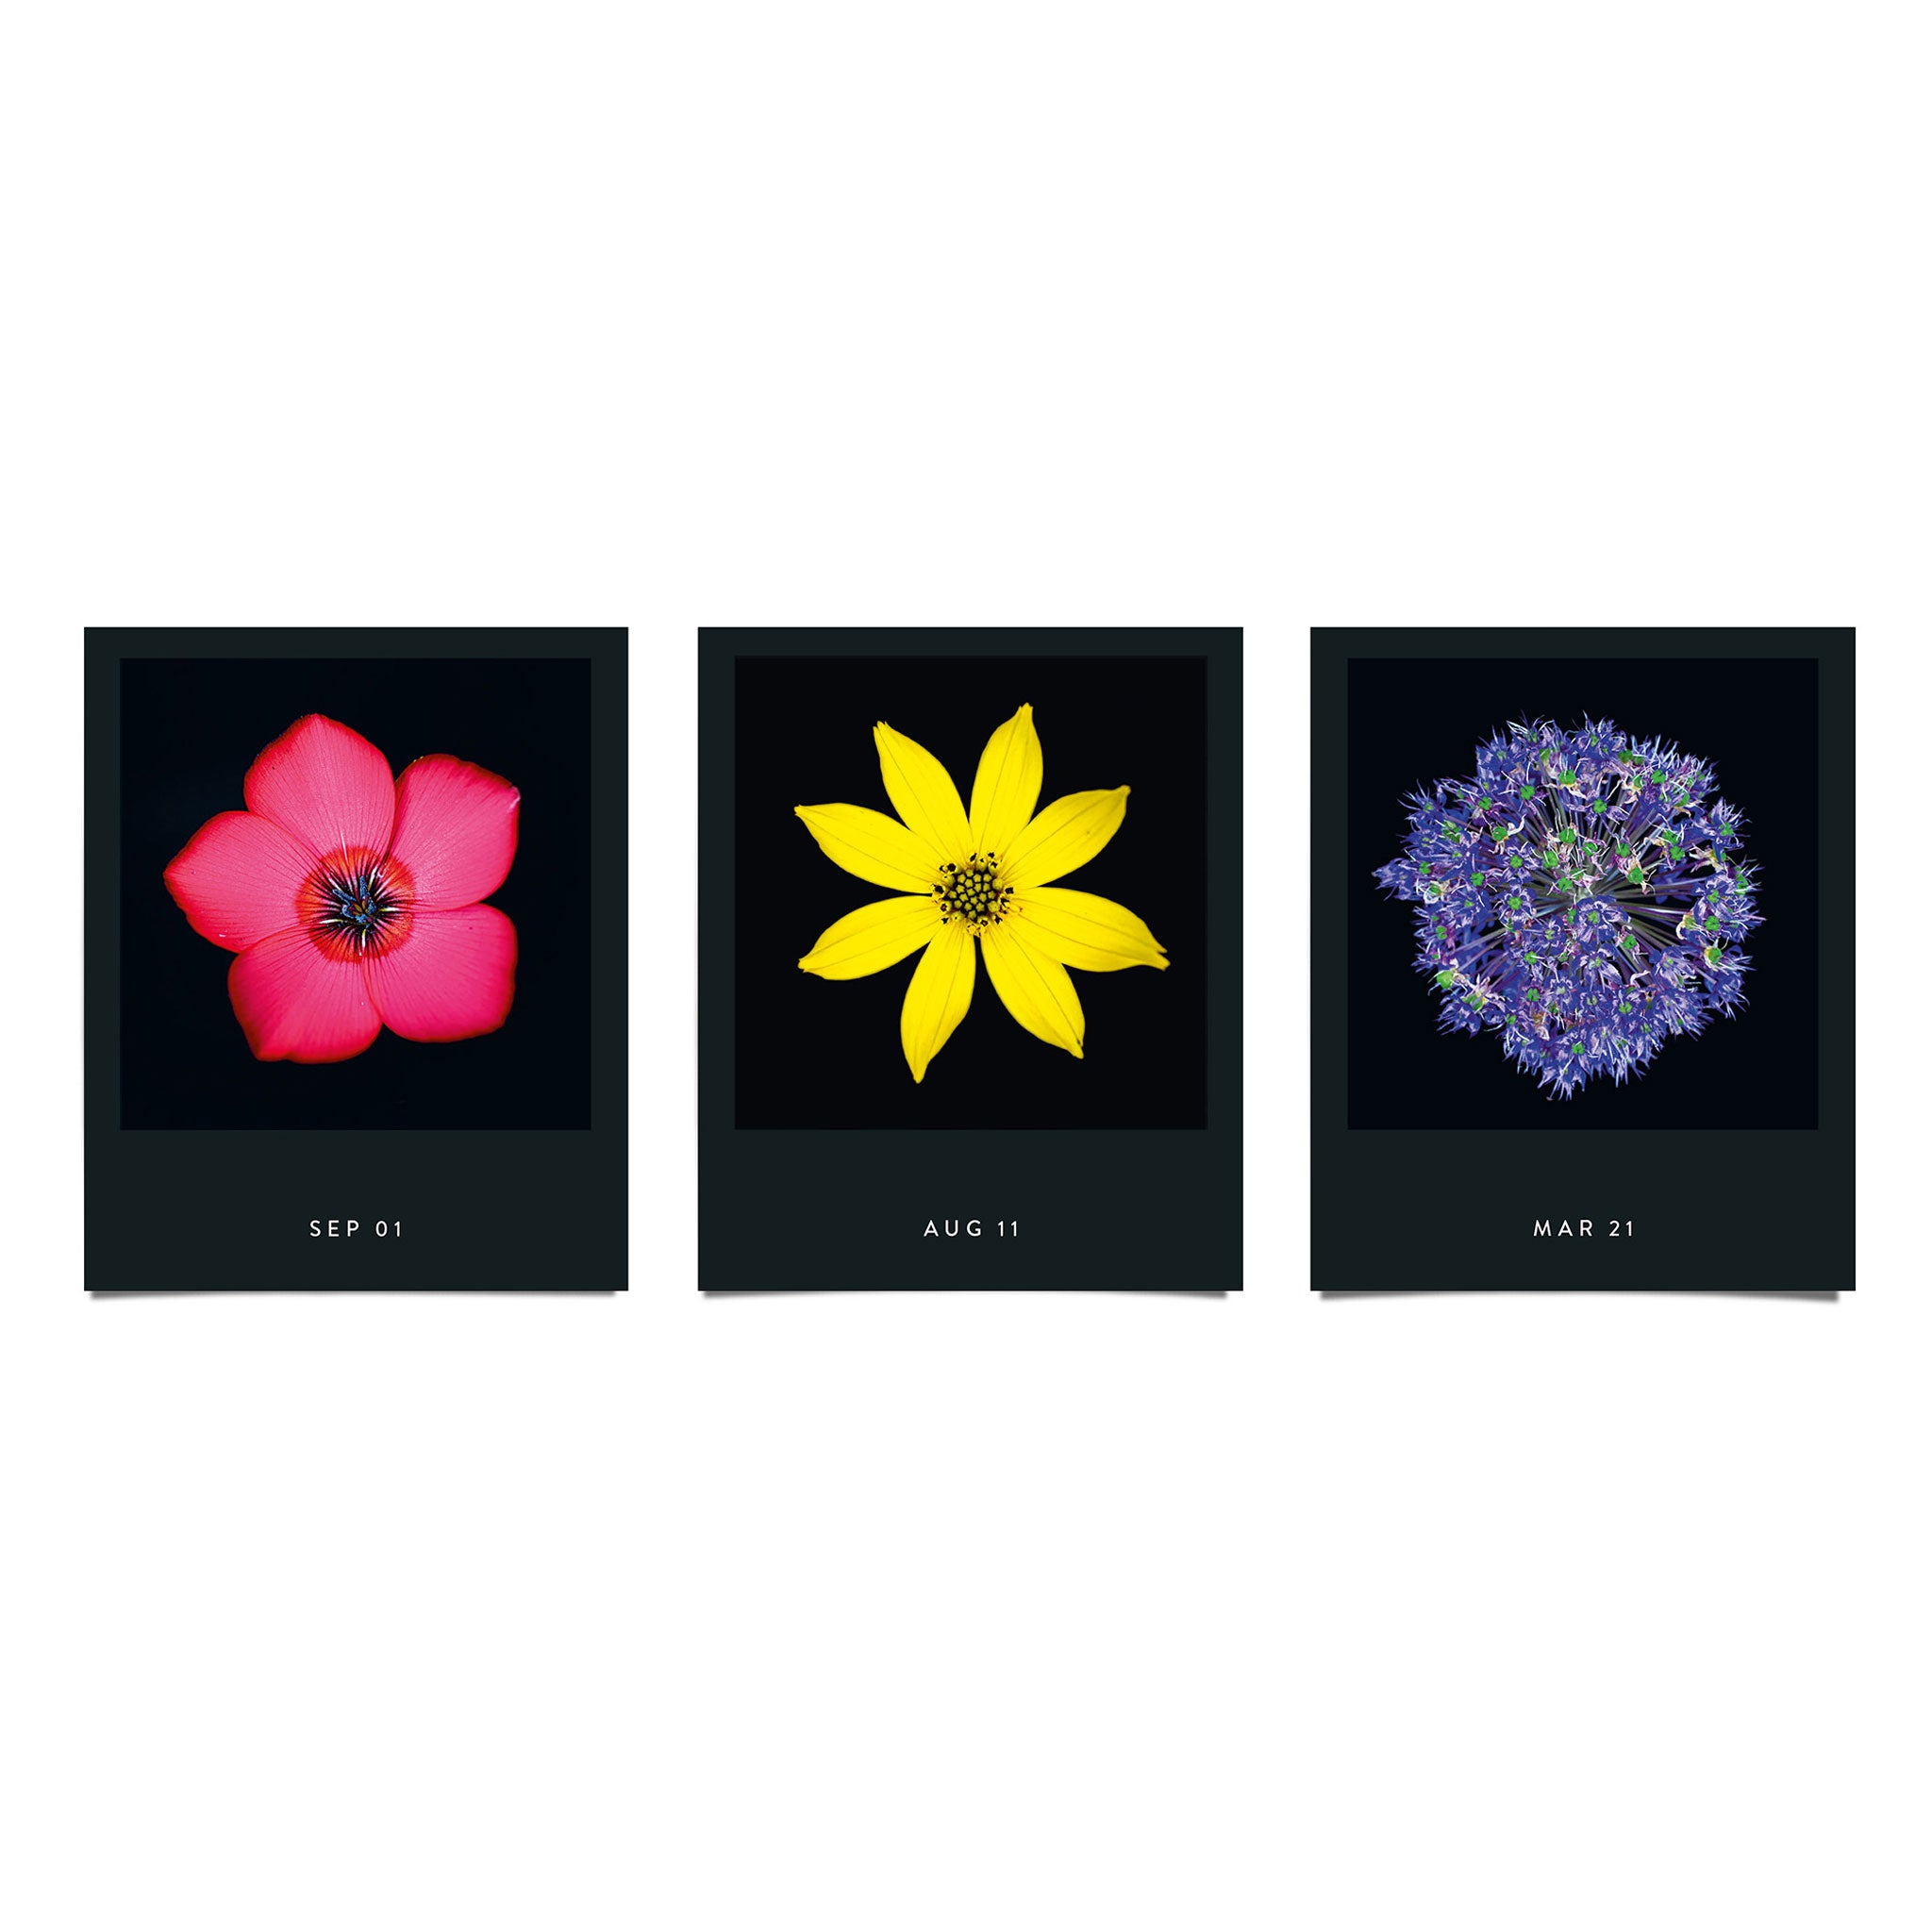 FLAMBOYANT FLOWERS | A flower a day | Blumen KALENDER | Nicolas Mériel | seltmann+söhne